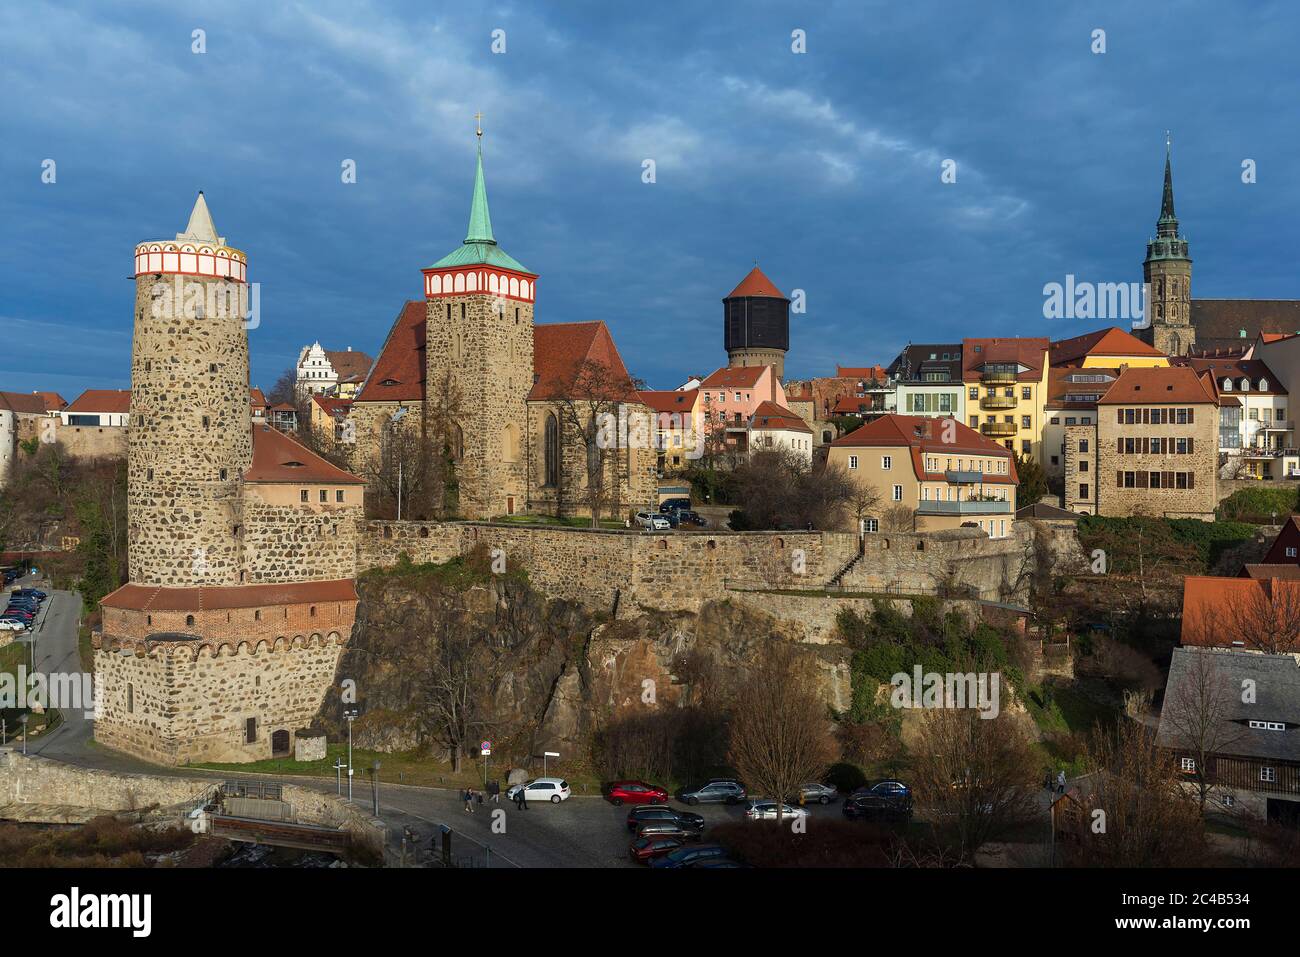 Vista delle mura storiche della città con torri della città vecchia, Bautzen, alta Lusazia, Sassonia, Germania Foto Stock